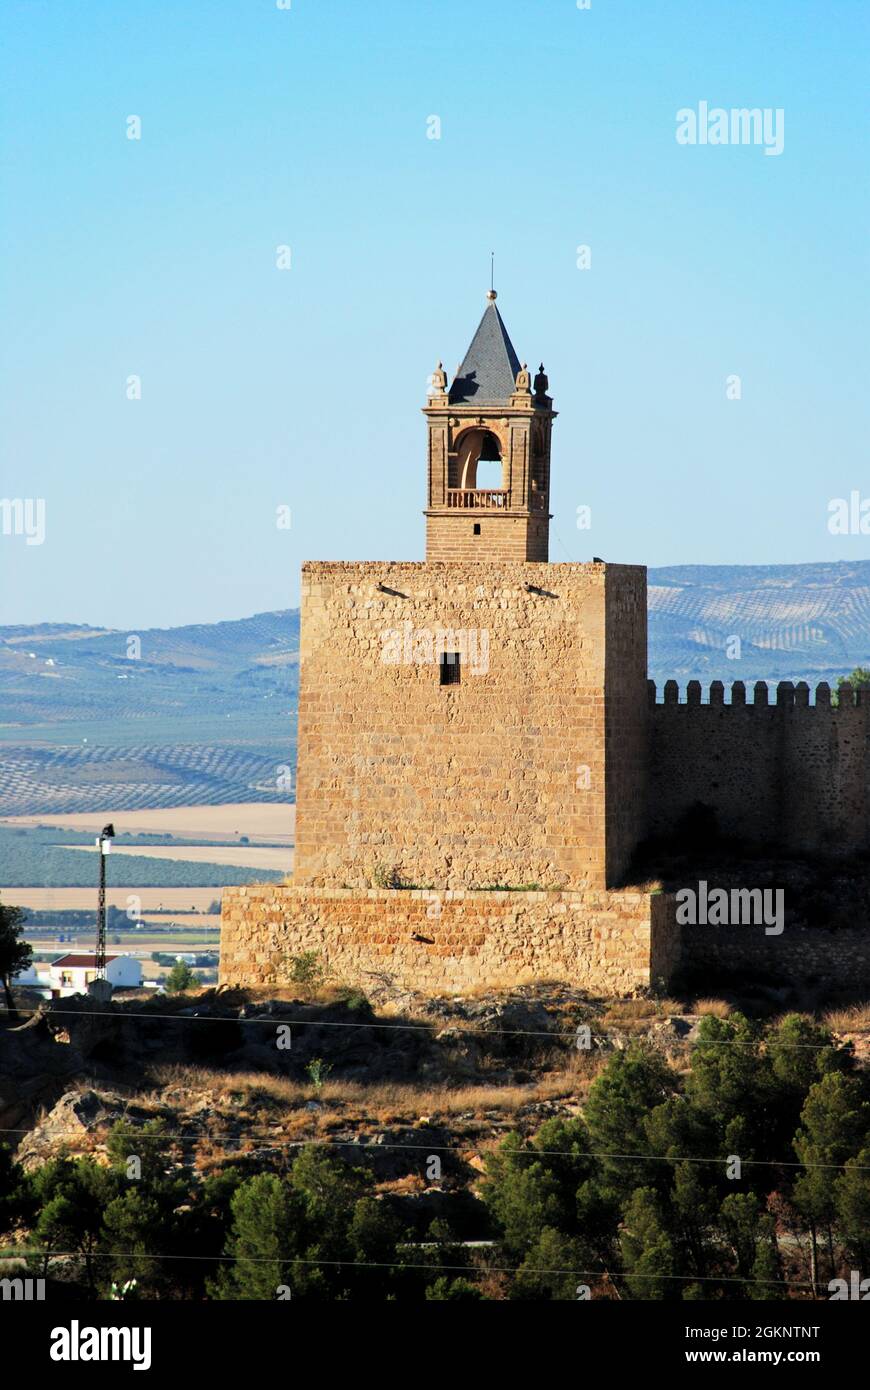 Vista sul campanile della fortezza del castello (torre del homenaje), Antequera, Provincia di Malaga, Andalusia, Spagna, Europa occidentale. Foto Stock